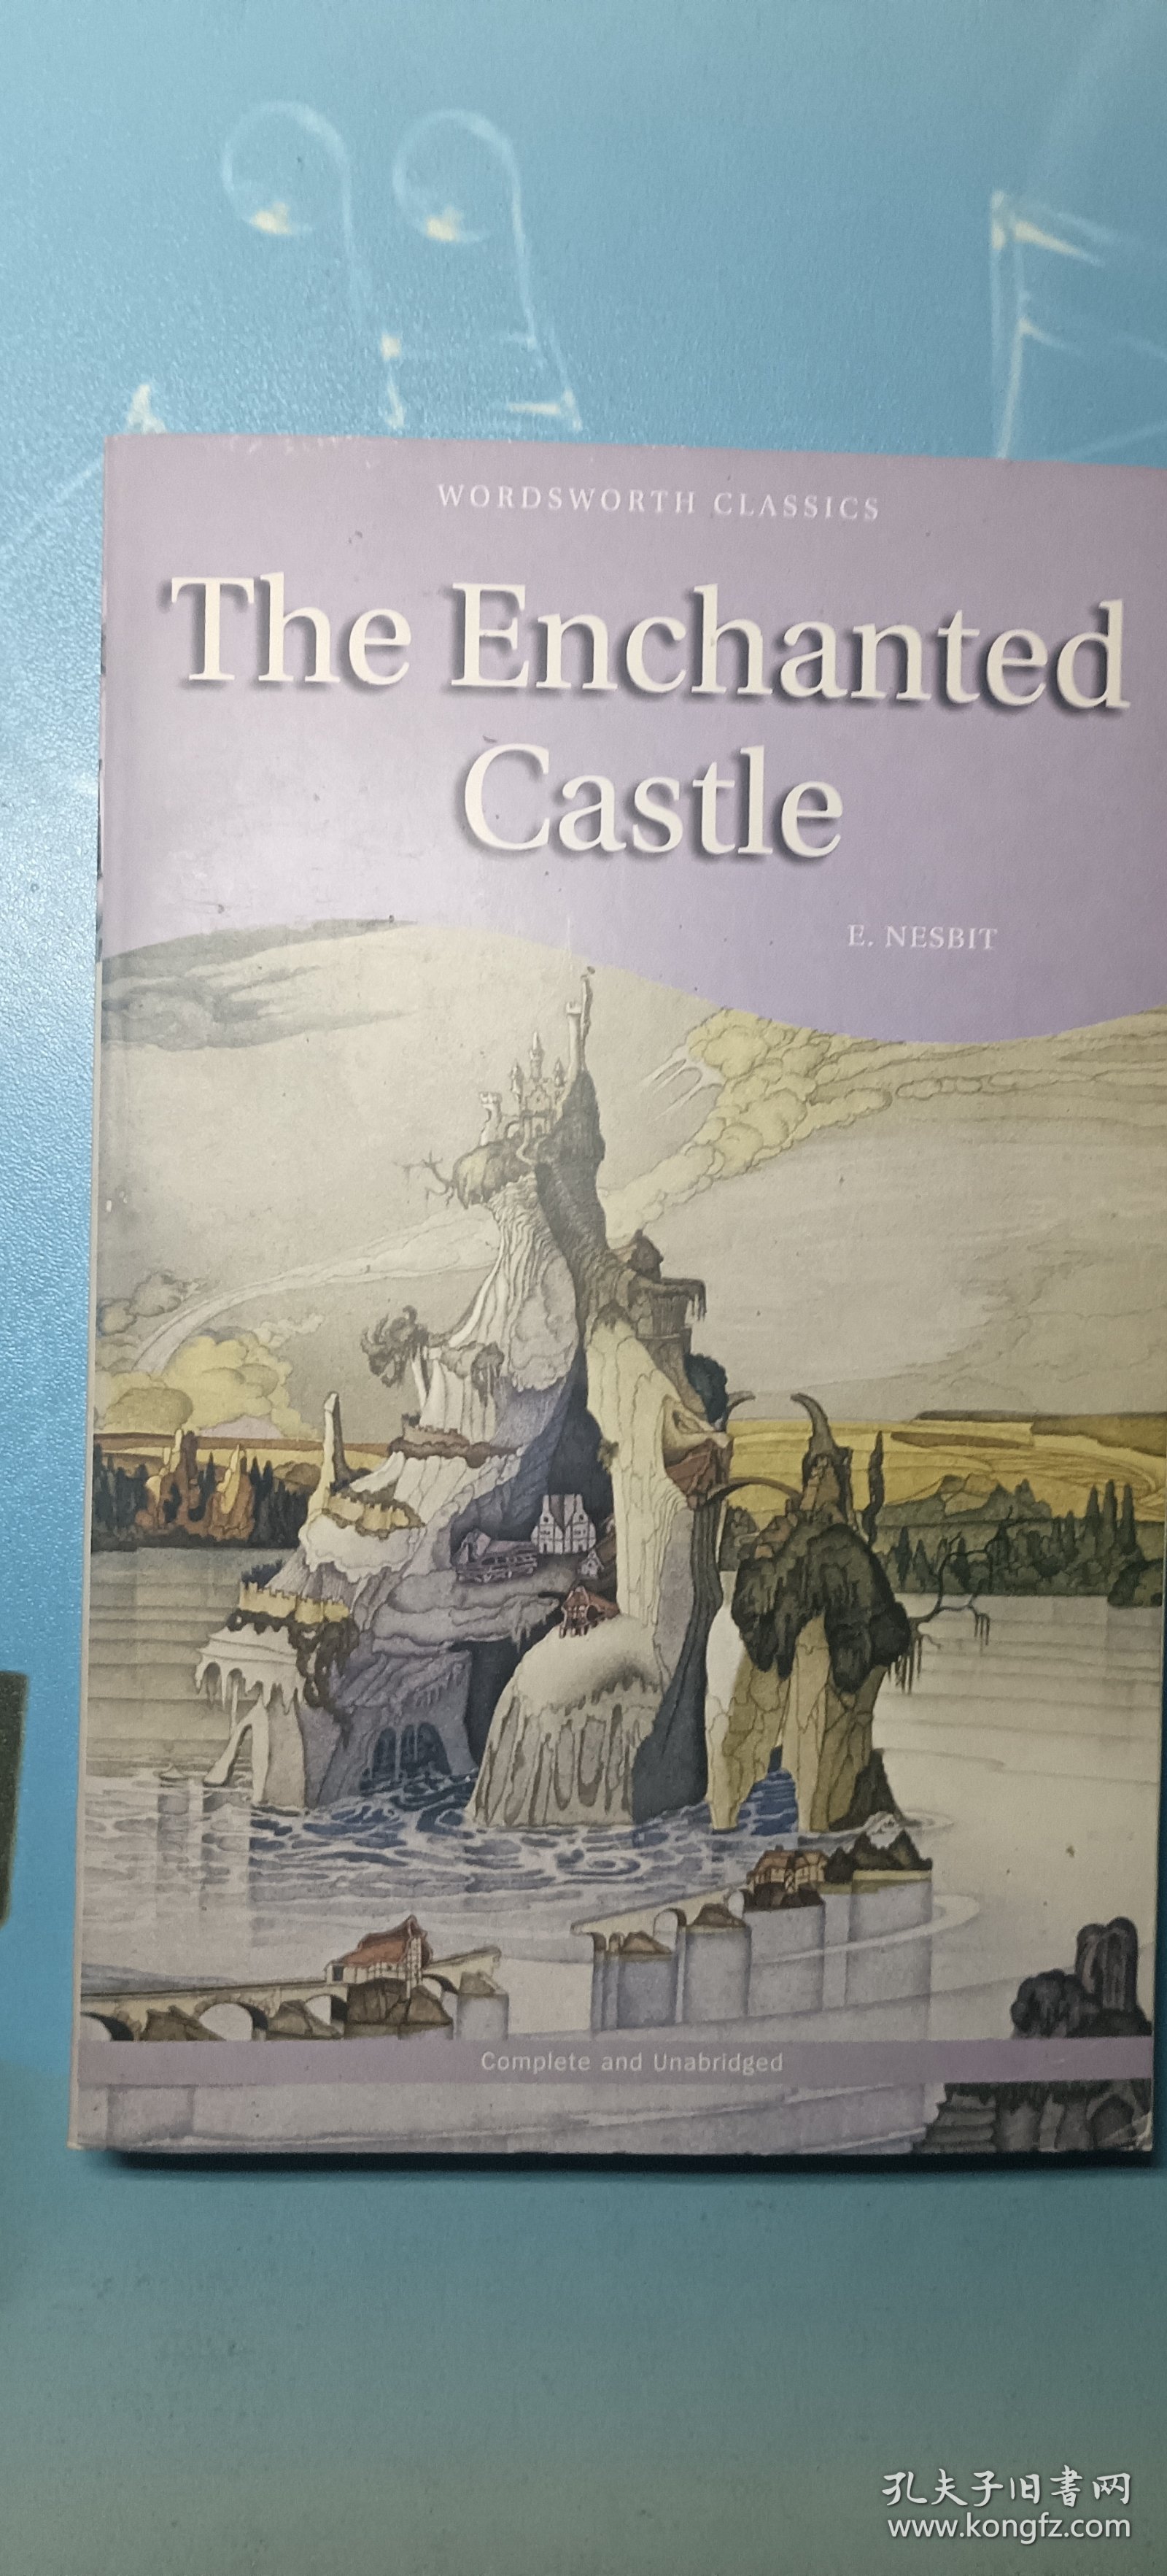 Bechanted Castle 圣歌城堡(Wordsworth Classics)